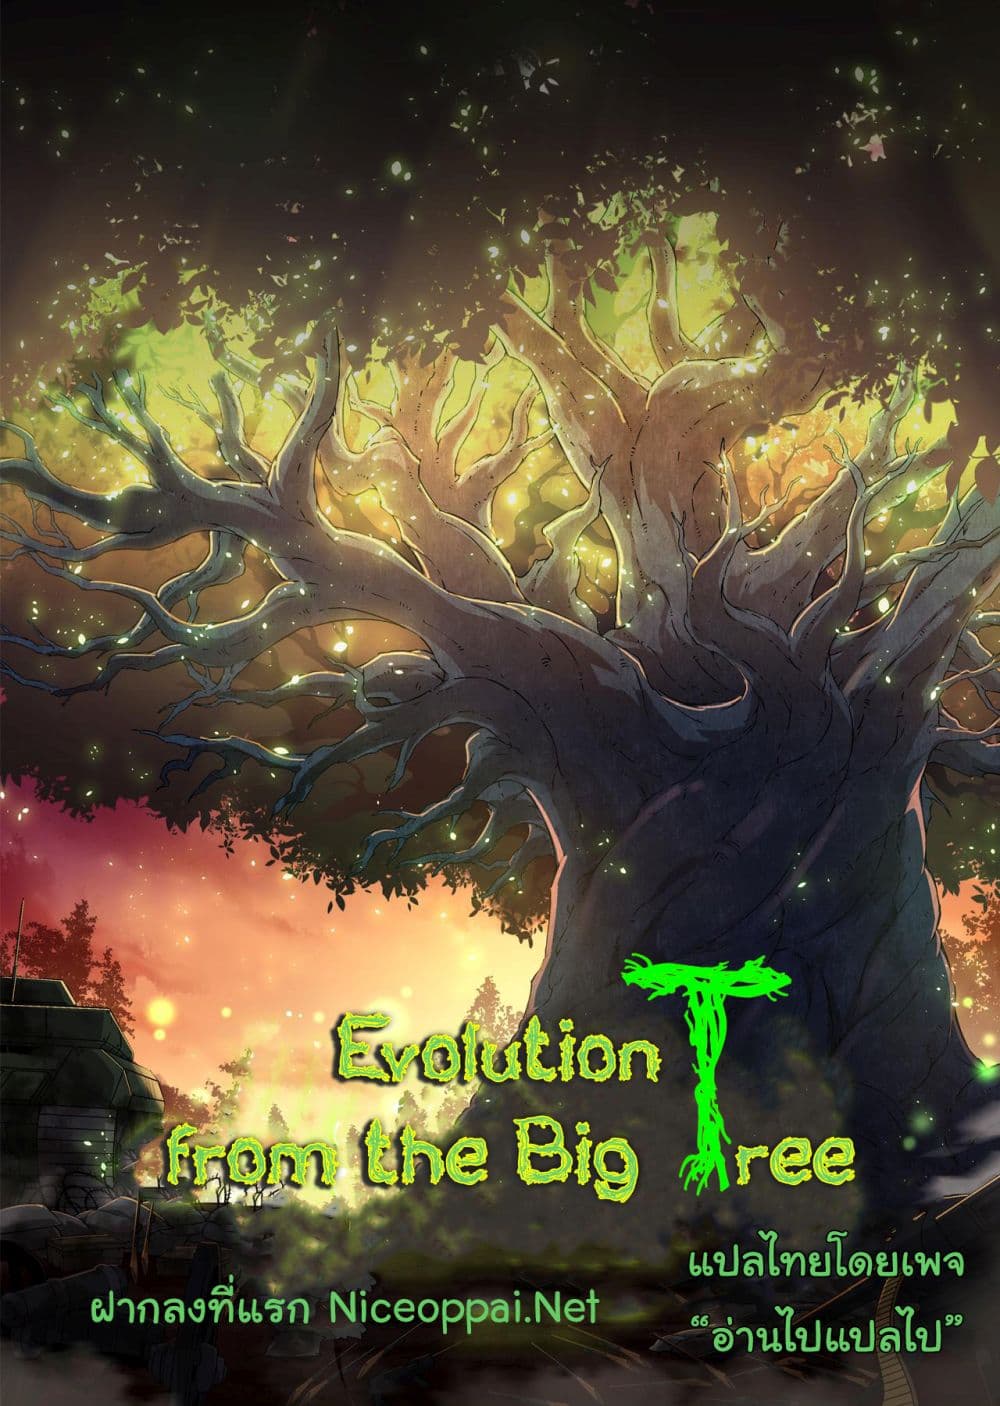 Evolution from the Big Tree Ã Â¸â€¢Ã Â¸Â­Ã Â¸â„¢Ã Â¸â€”Ã Â¸ÂµÃ Â¹Ë† 27 (1)